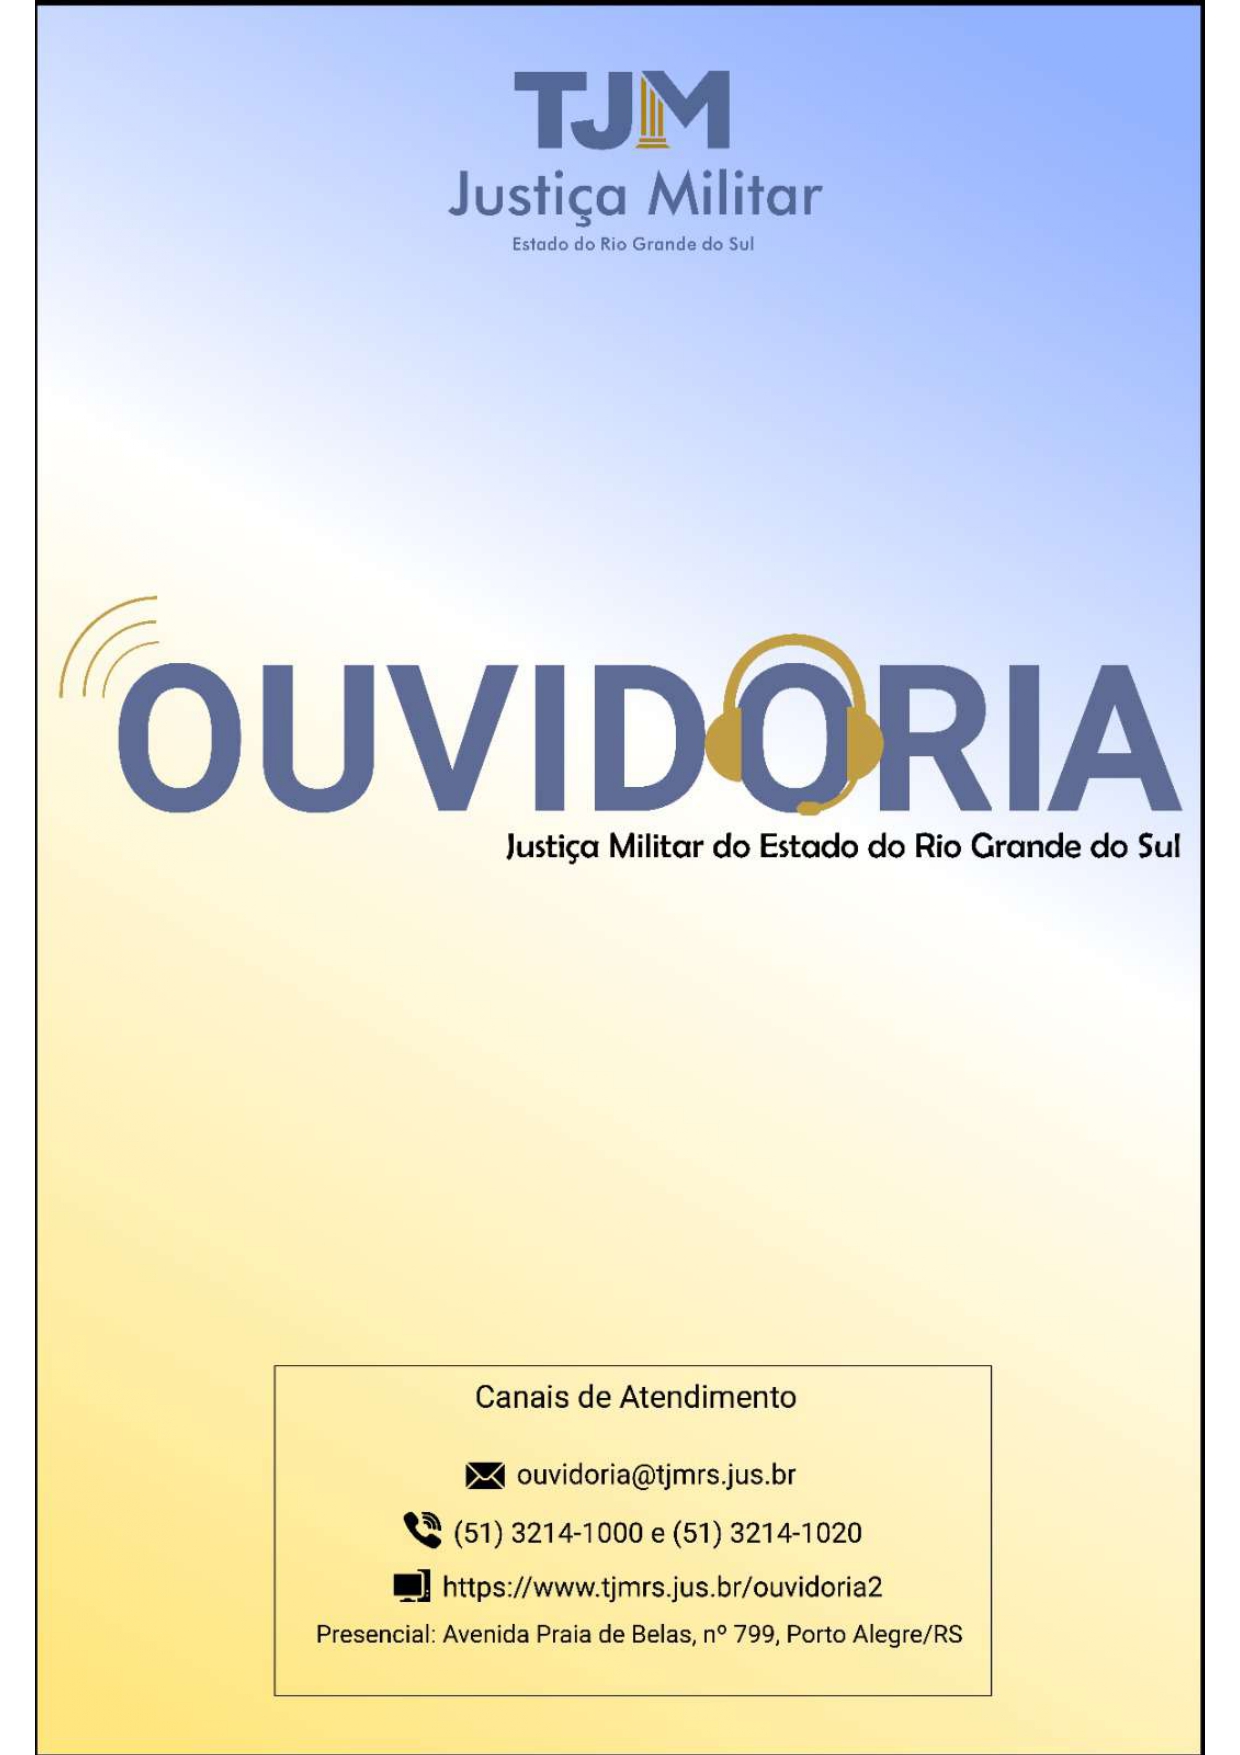 Banner Ouvidoria